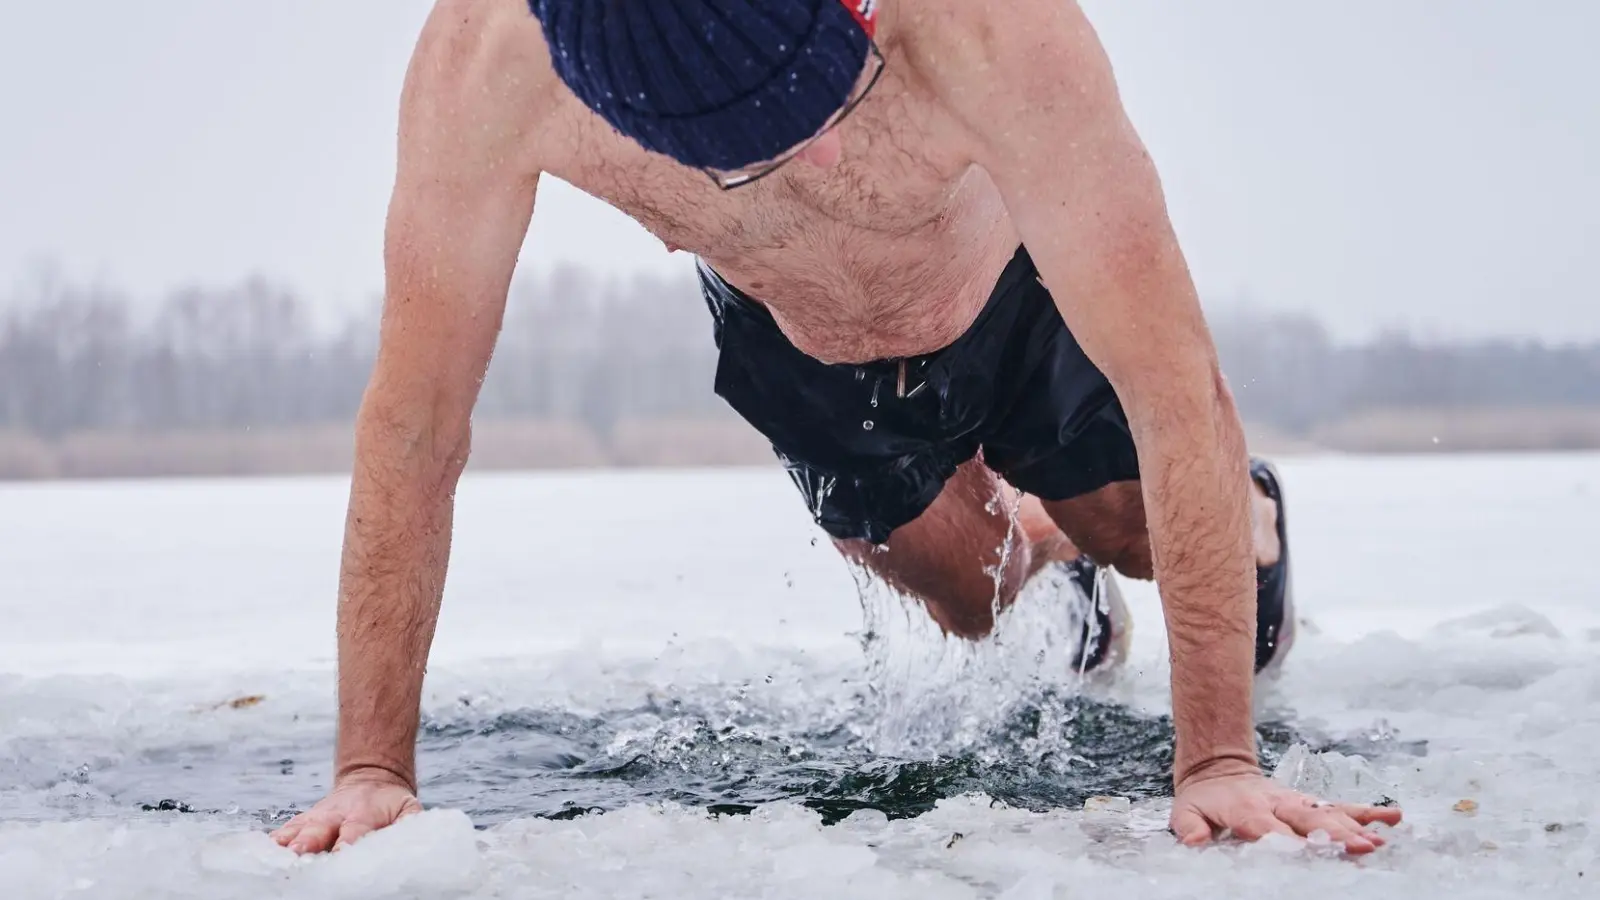 30 Sekunden können schon viel sein: Beim Eisbaden ist es ein Muss, auf die Signale des eigenen Körpers zu hören. (Foto: Annette Riedl/dpa/dpa-tmn)